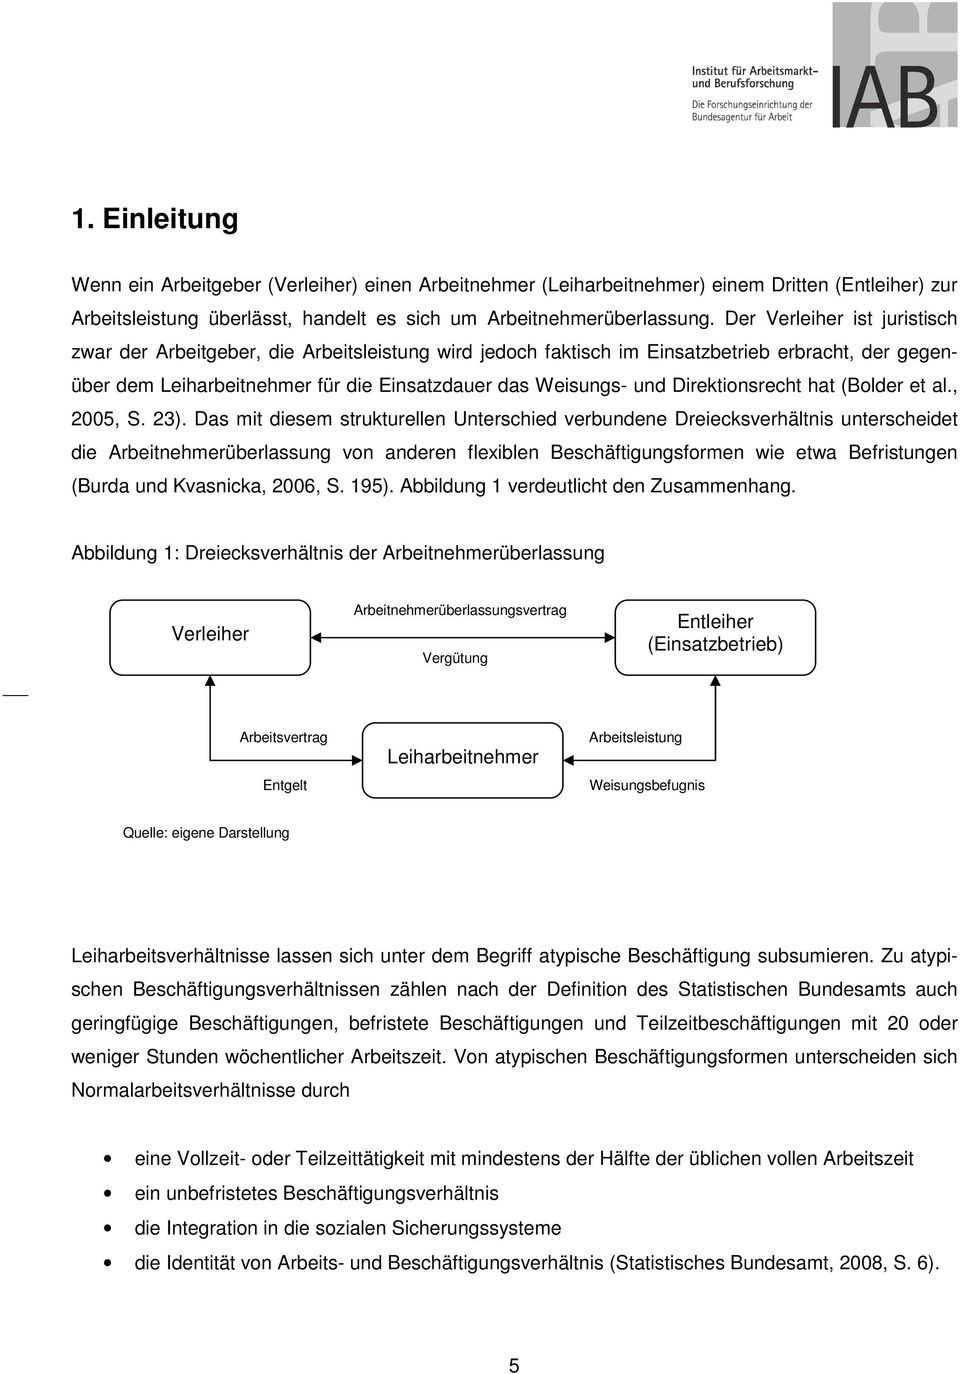 Direktionsrecht hat (Bolder et al., 2005, S. 23).